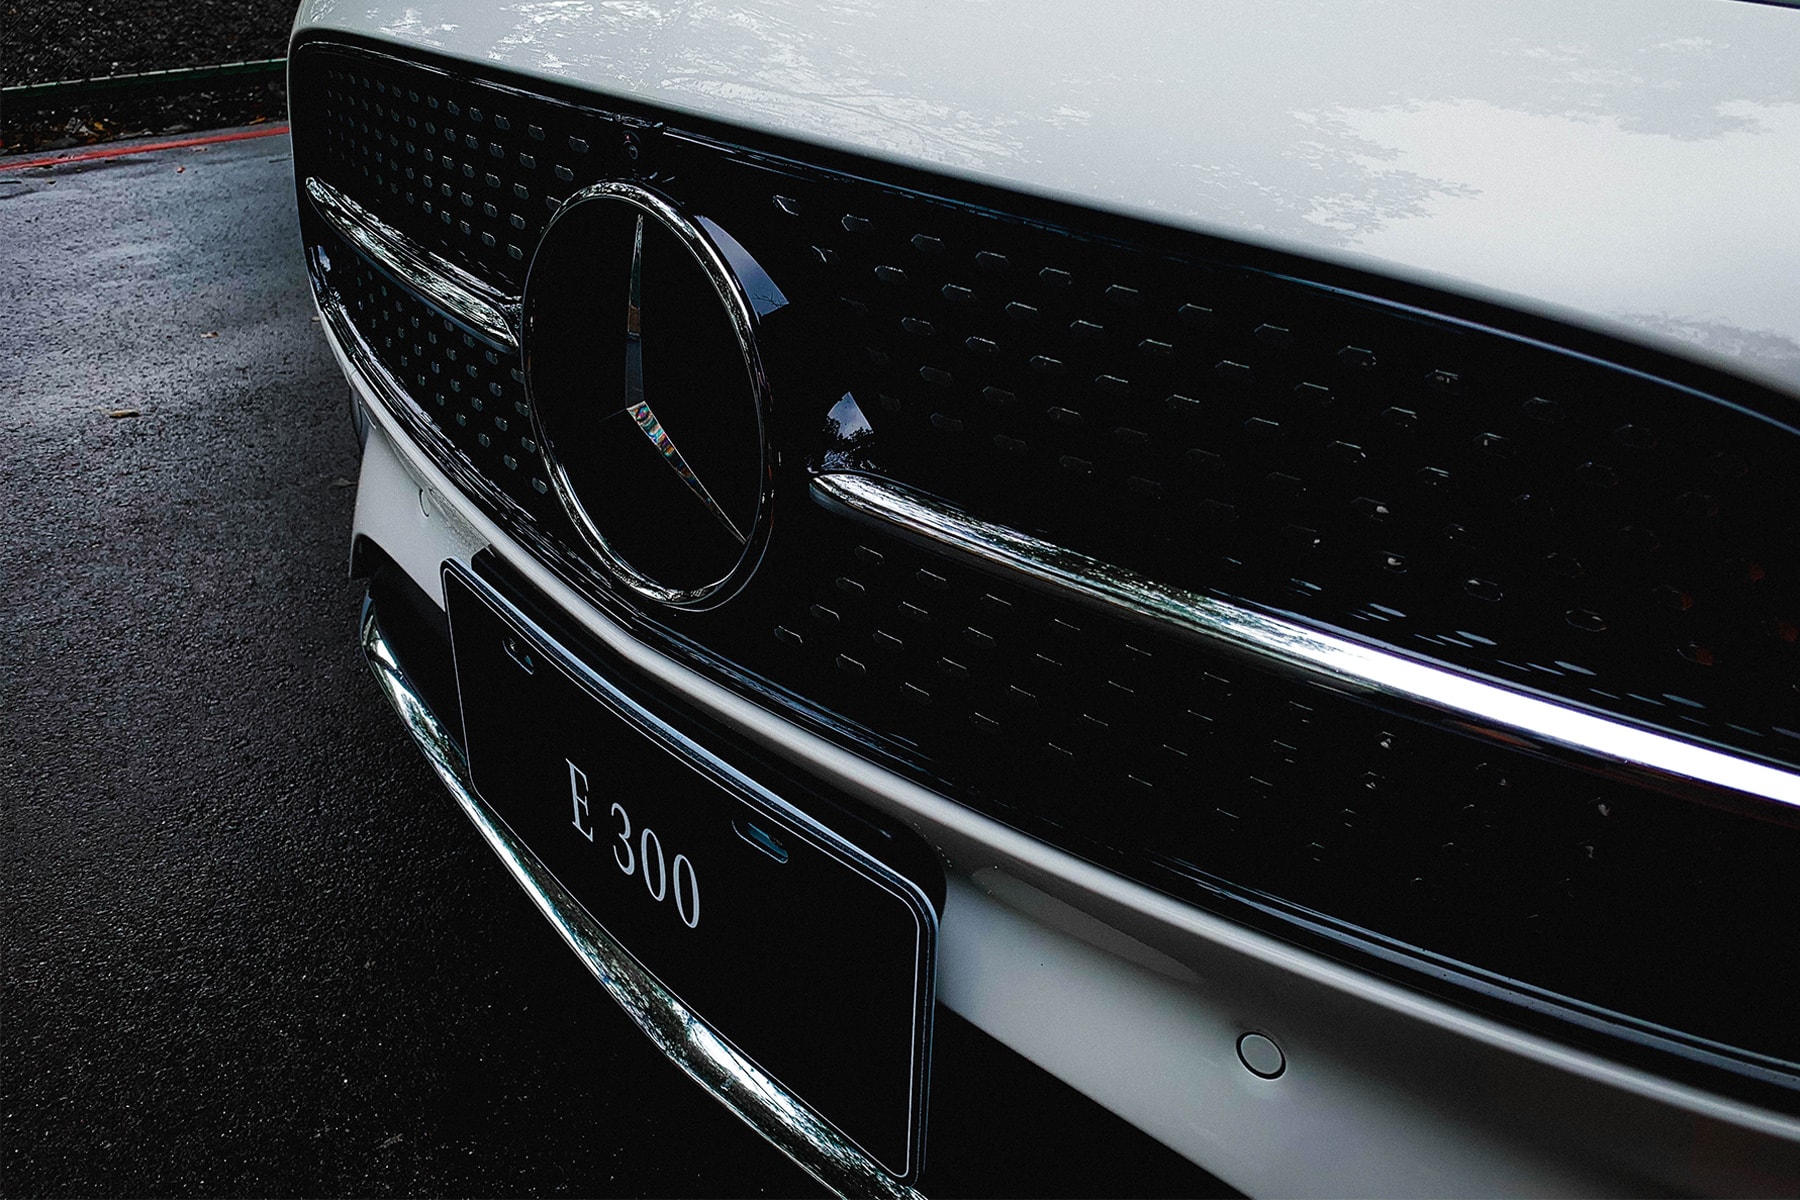 豪華跑格體驗 – Mercedes-Benz 全新 2021 年式樣 E300 Coupé 實測